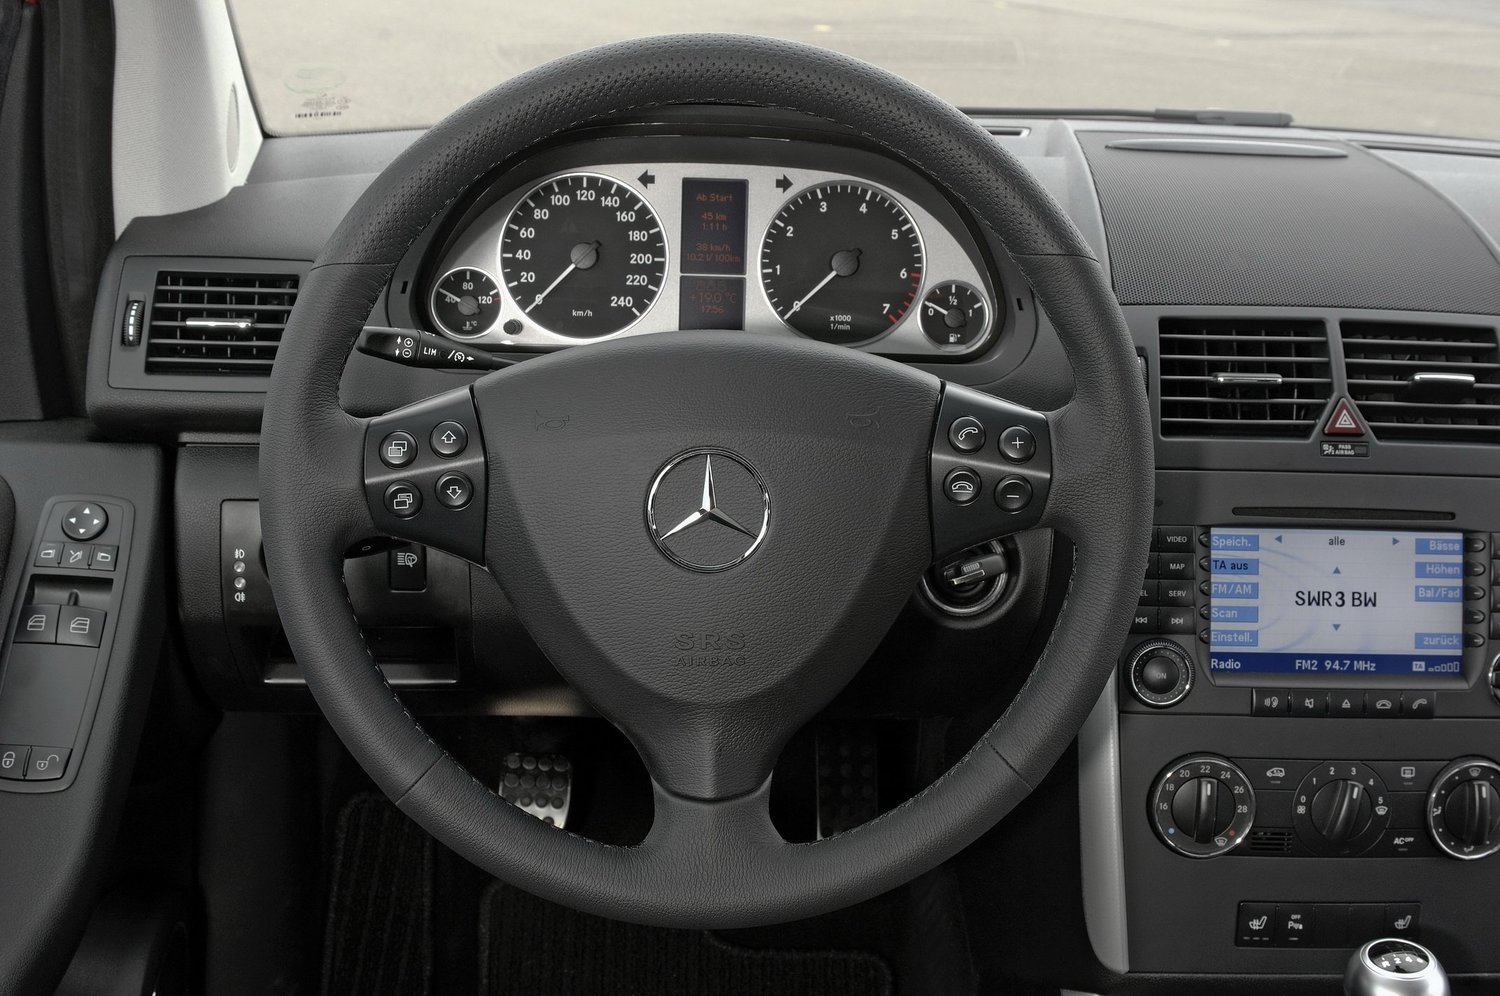 хэтчбек 3 дв. Mercedes-Benz A-klasse 2008 - 2012г выпуска модификация 1.5 CVT (95 л.с.)